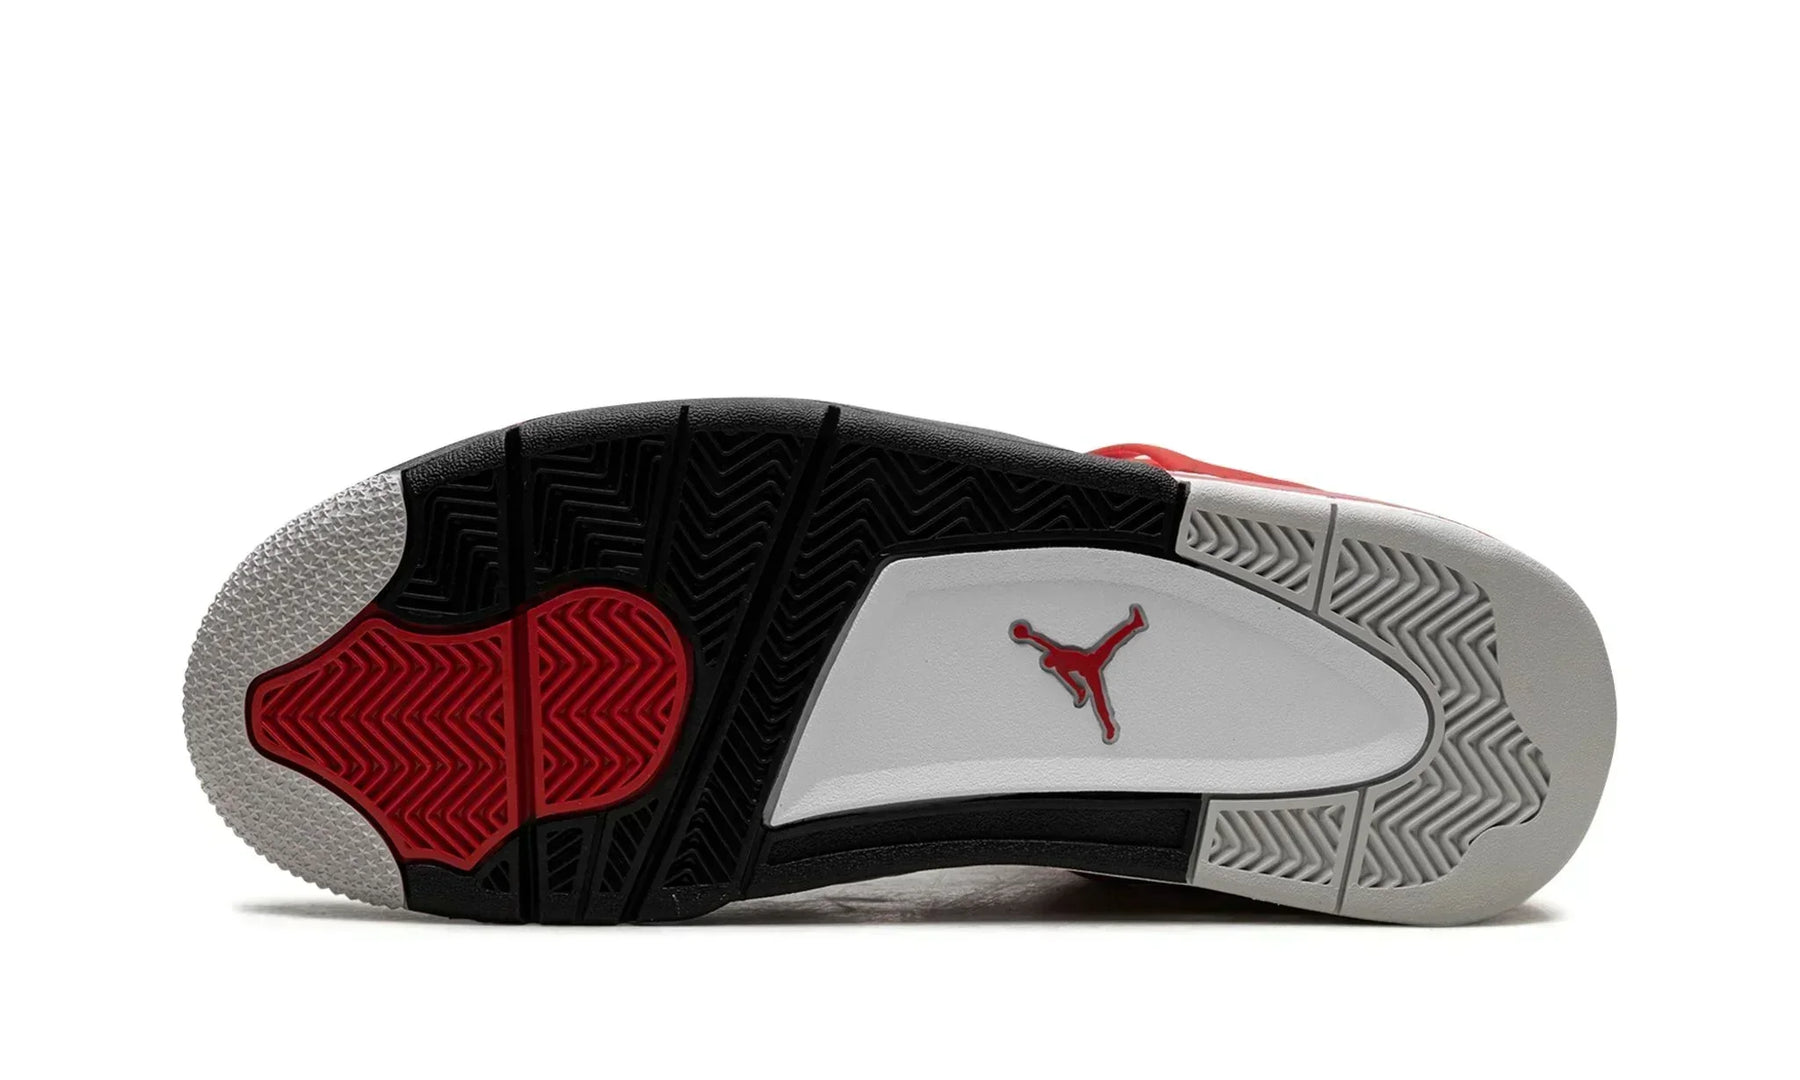 Air Jordan 4 "Red Cement" US 11.5